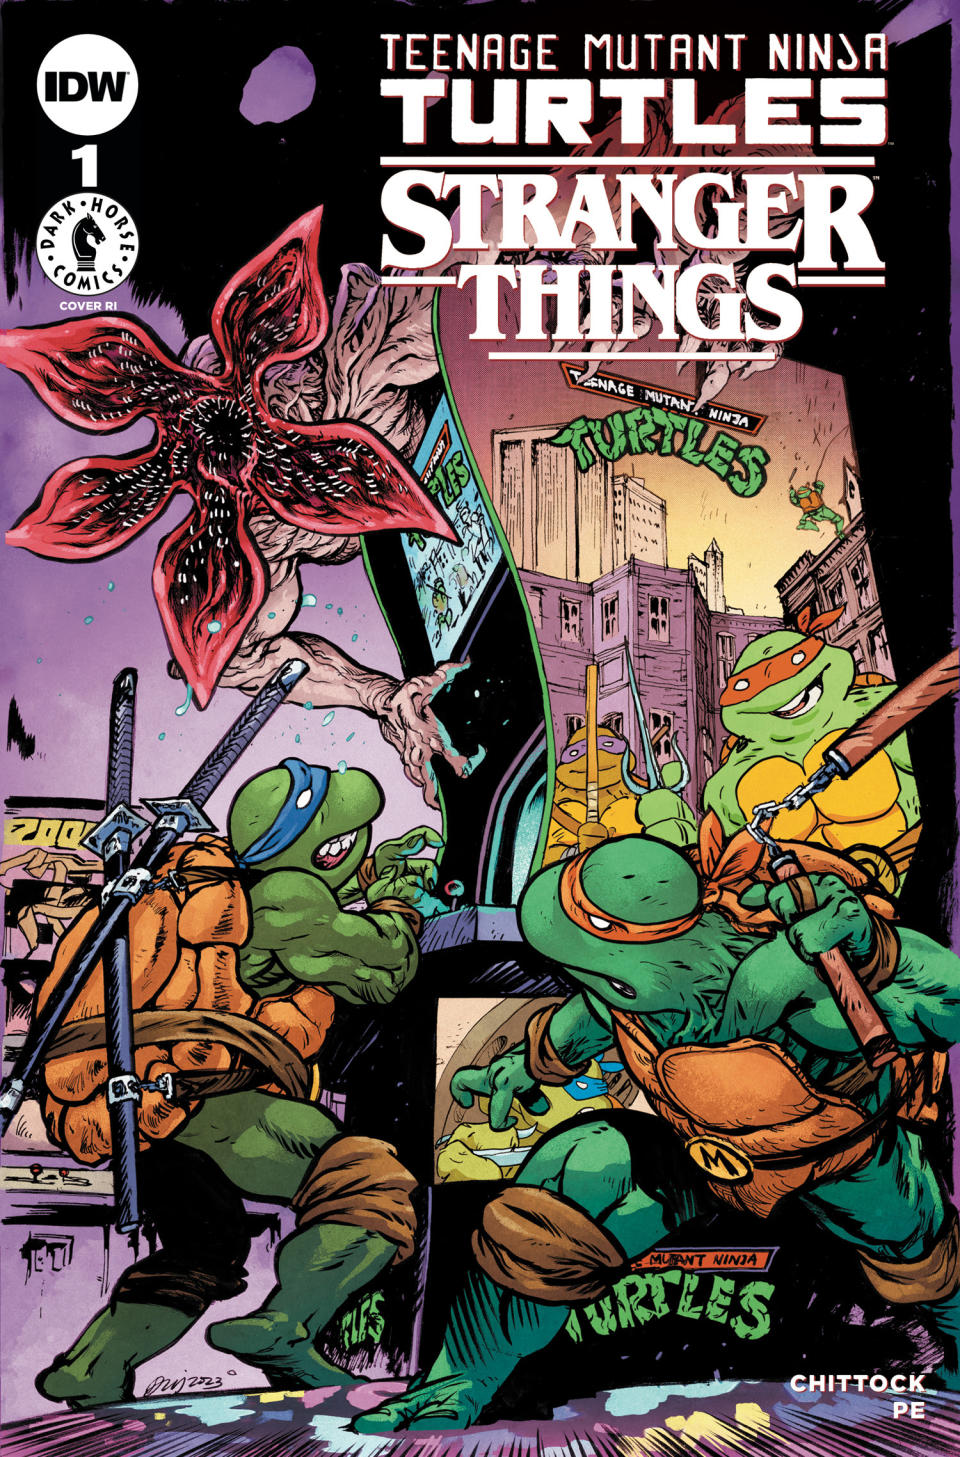 TMNT x Stranger Things #1 cover art